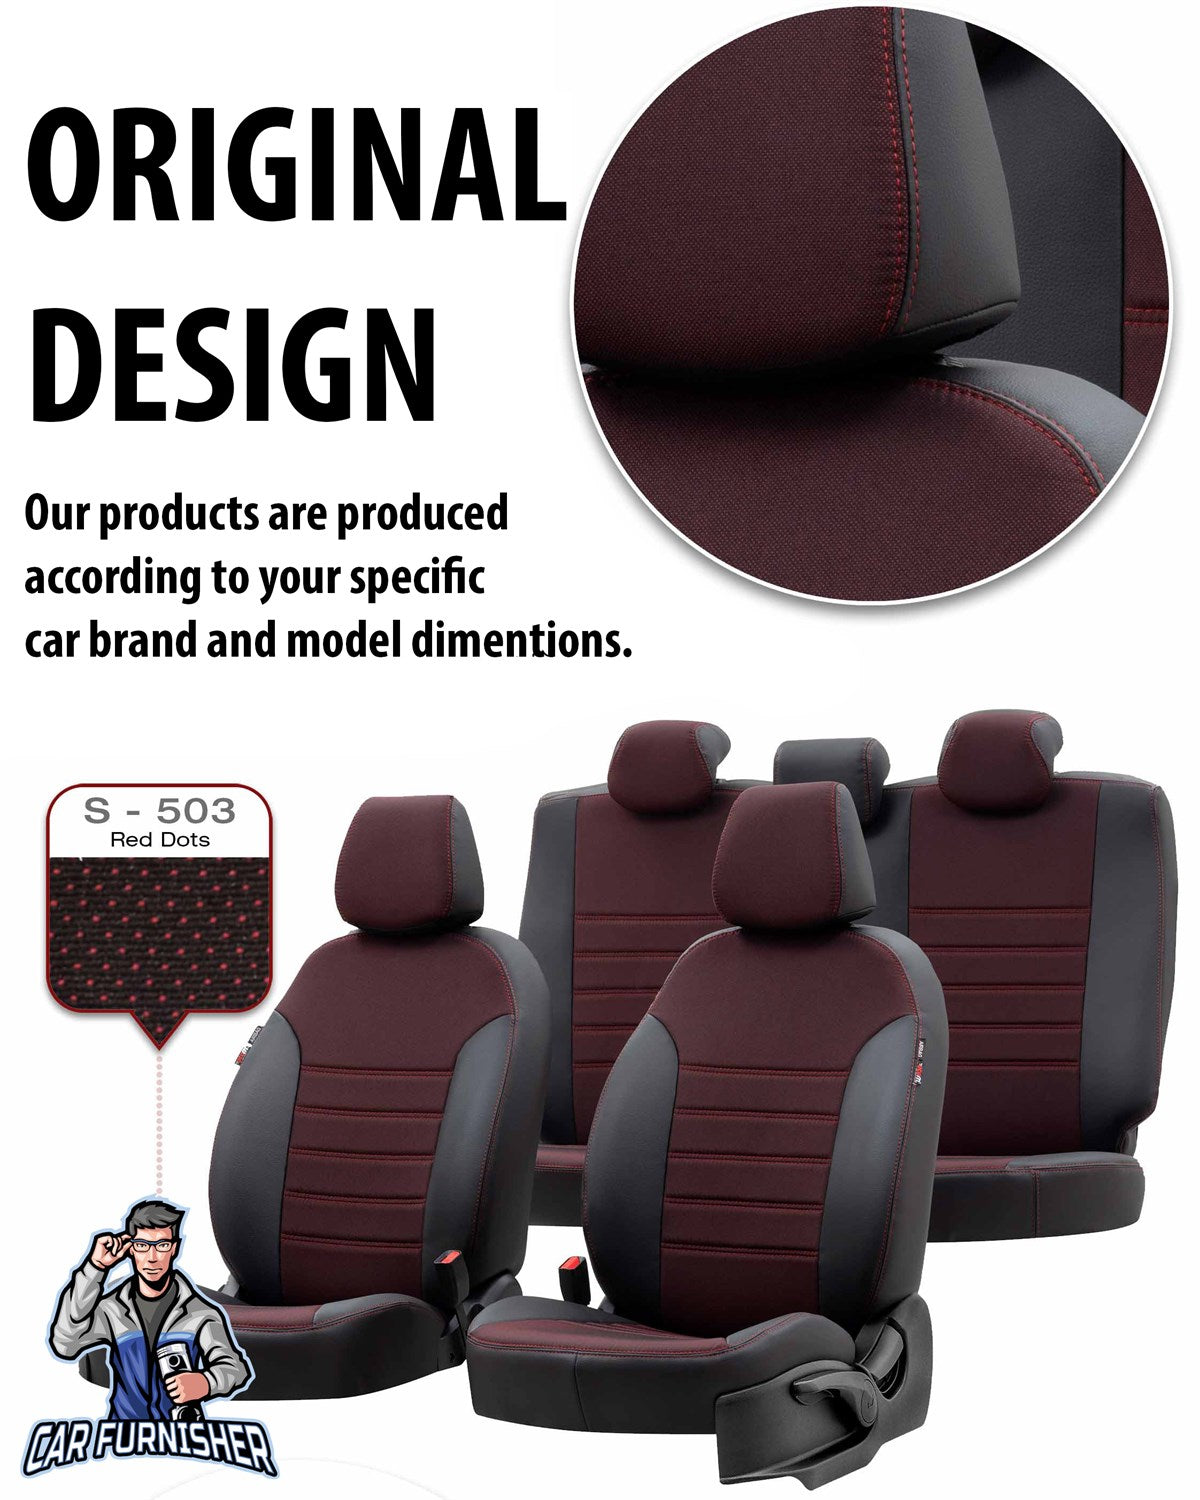 Alfa Romeo 147 Seat Covers Paris Leather & Jacquard Design Gray Leather & Jacquard Fabric